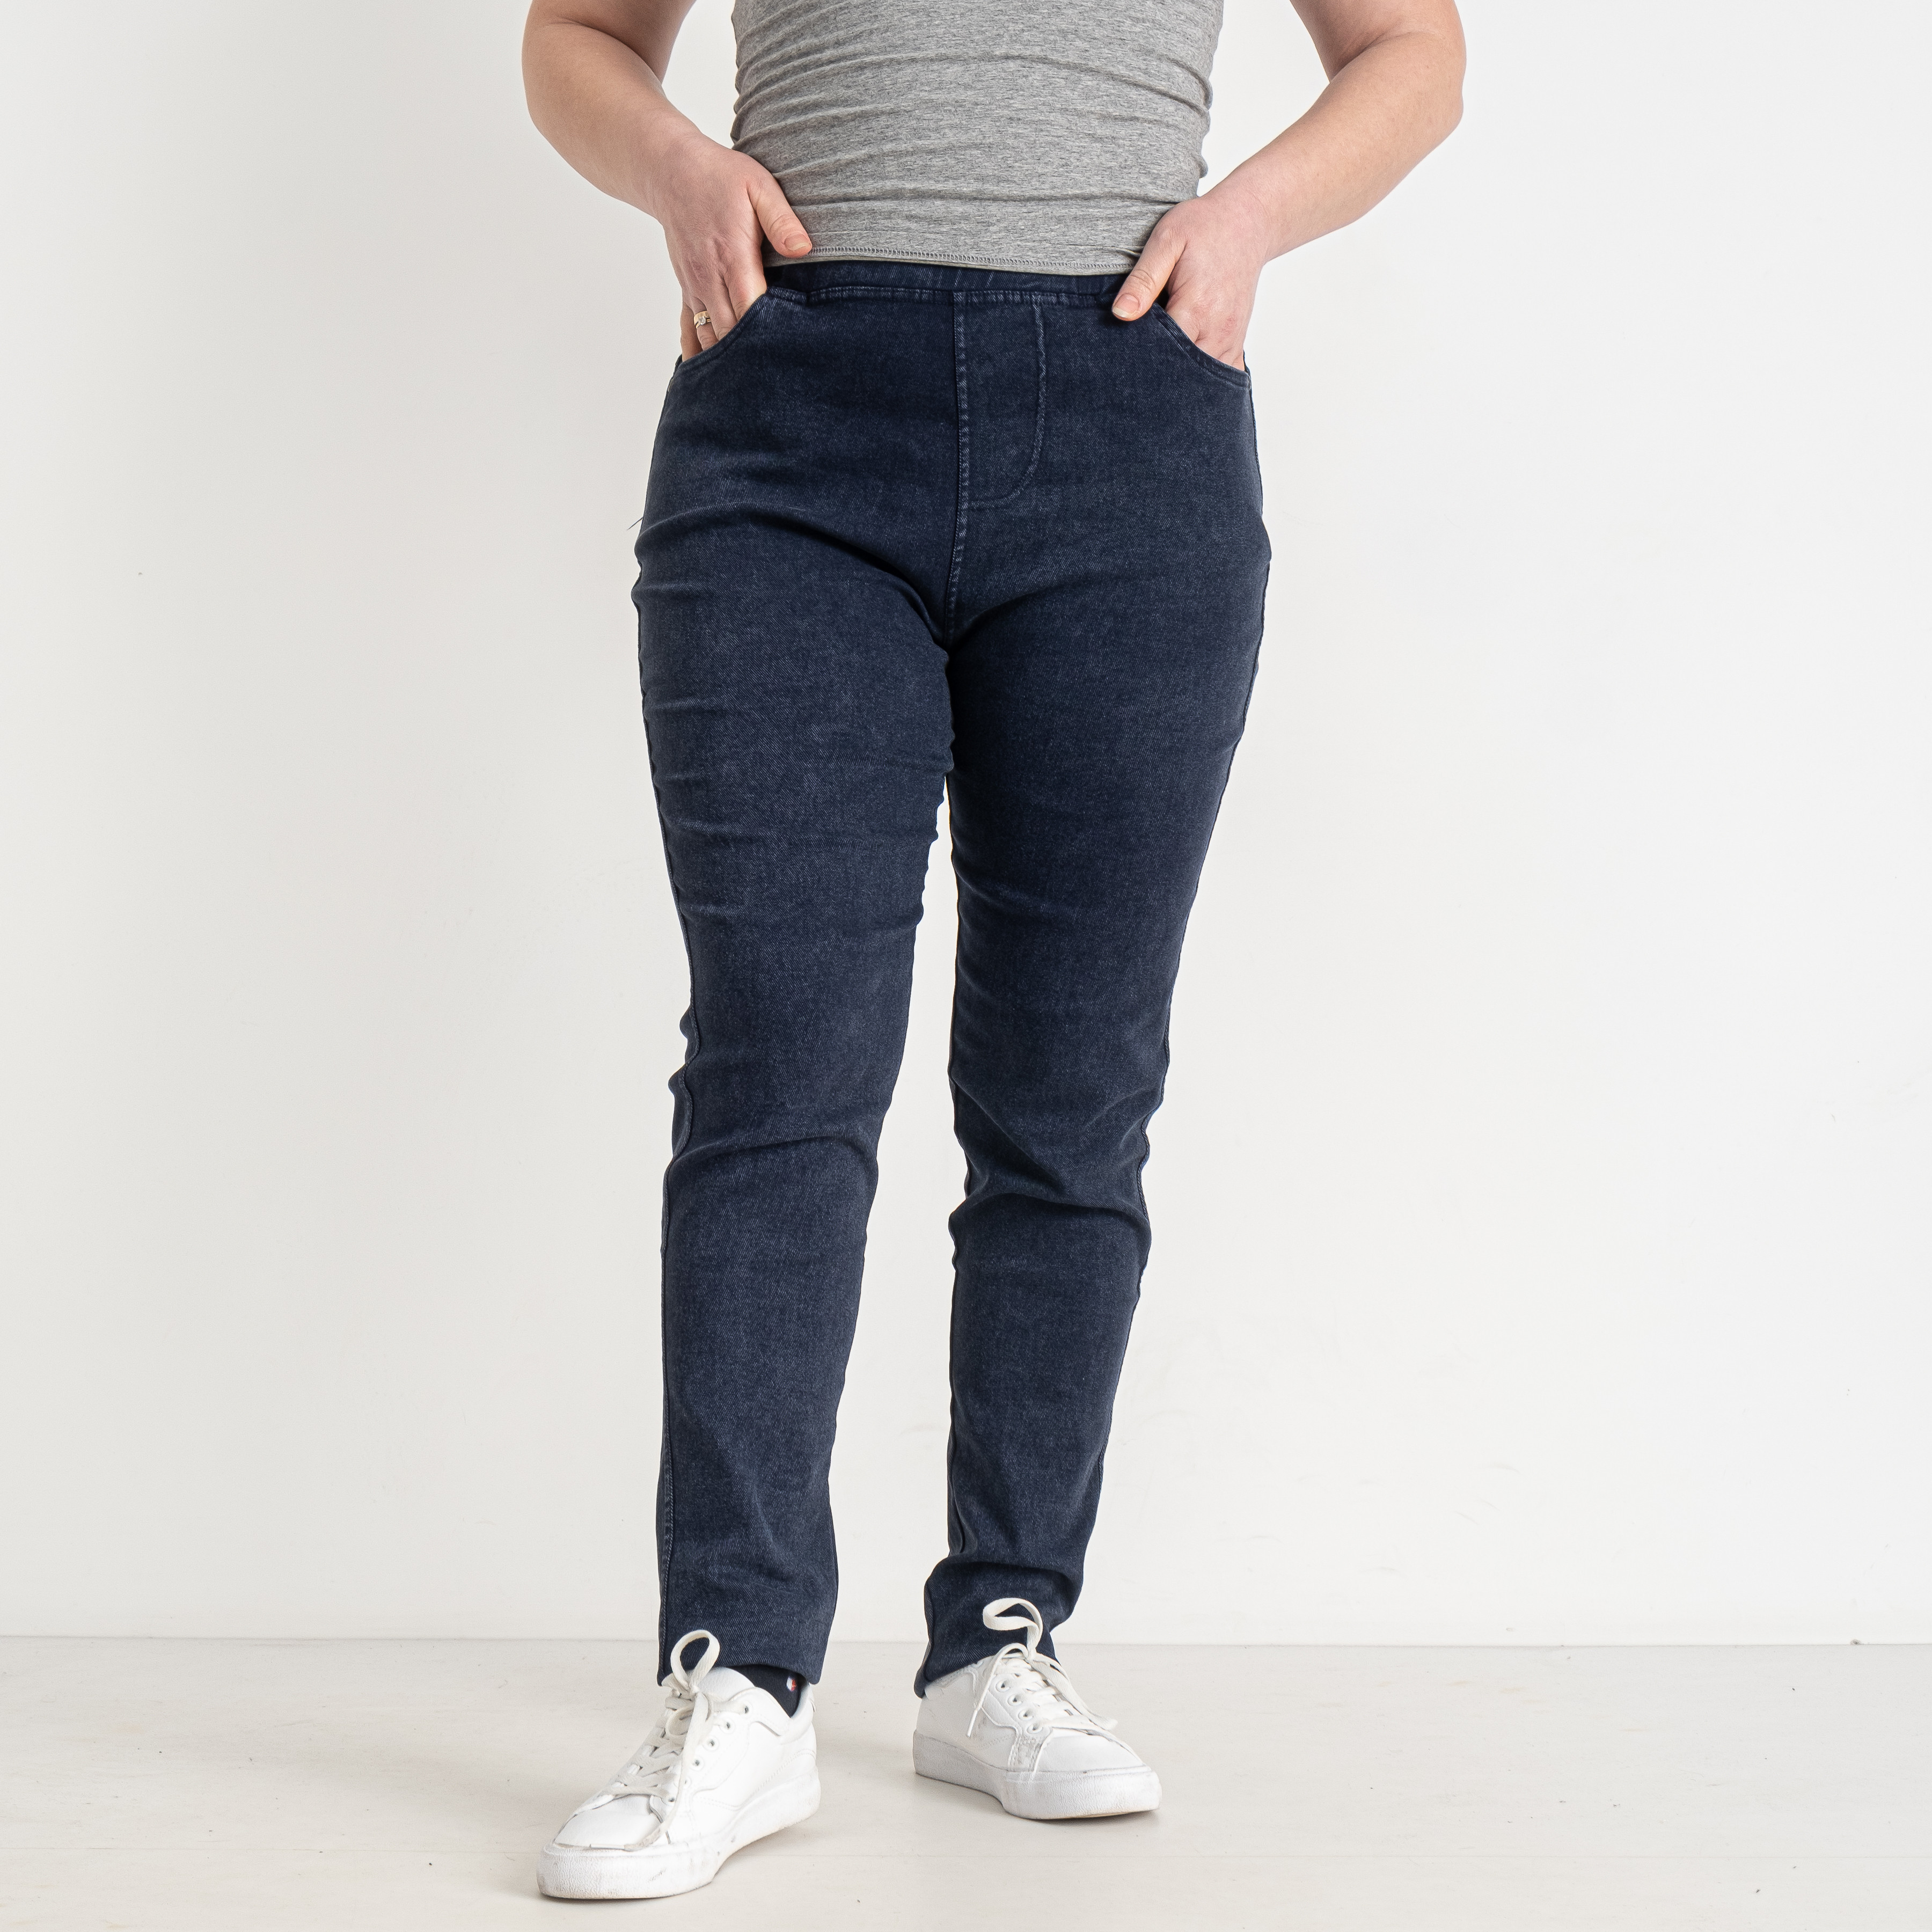 4033-52 синие женские джинсы (ЛАСТОЧКА, стрейчевые, 3 ед. размеры батал: 6XL. 7XL. 8XL)